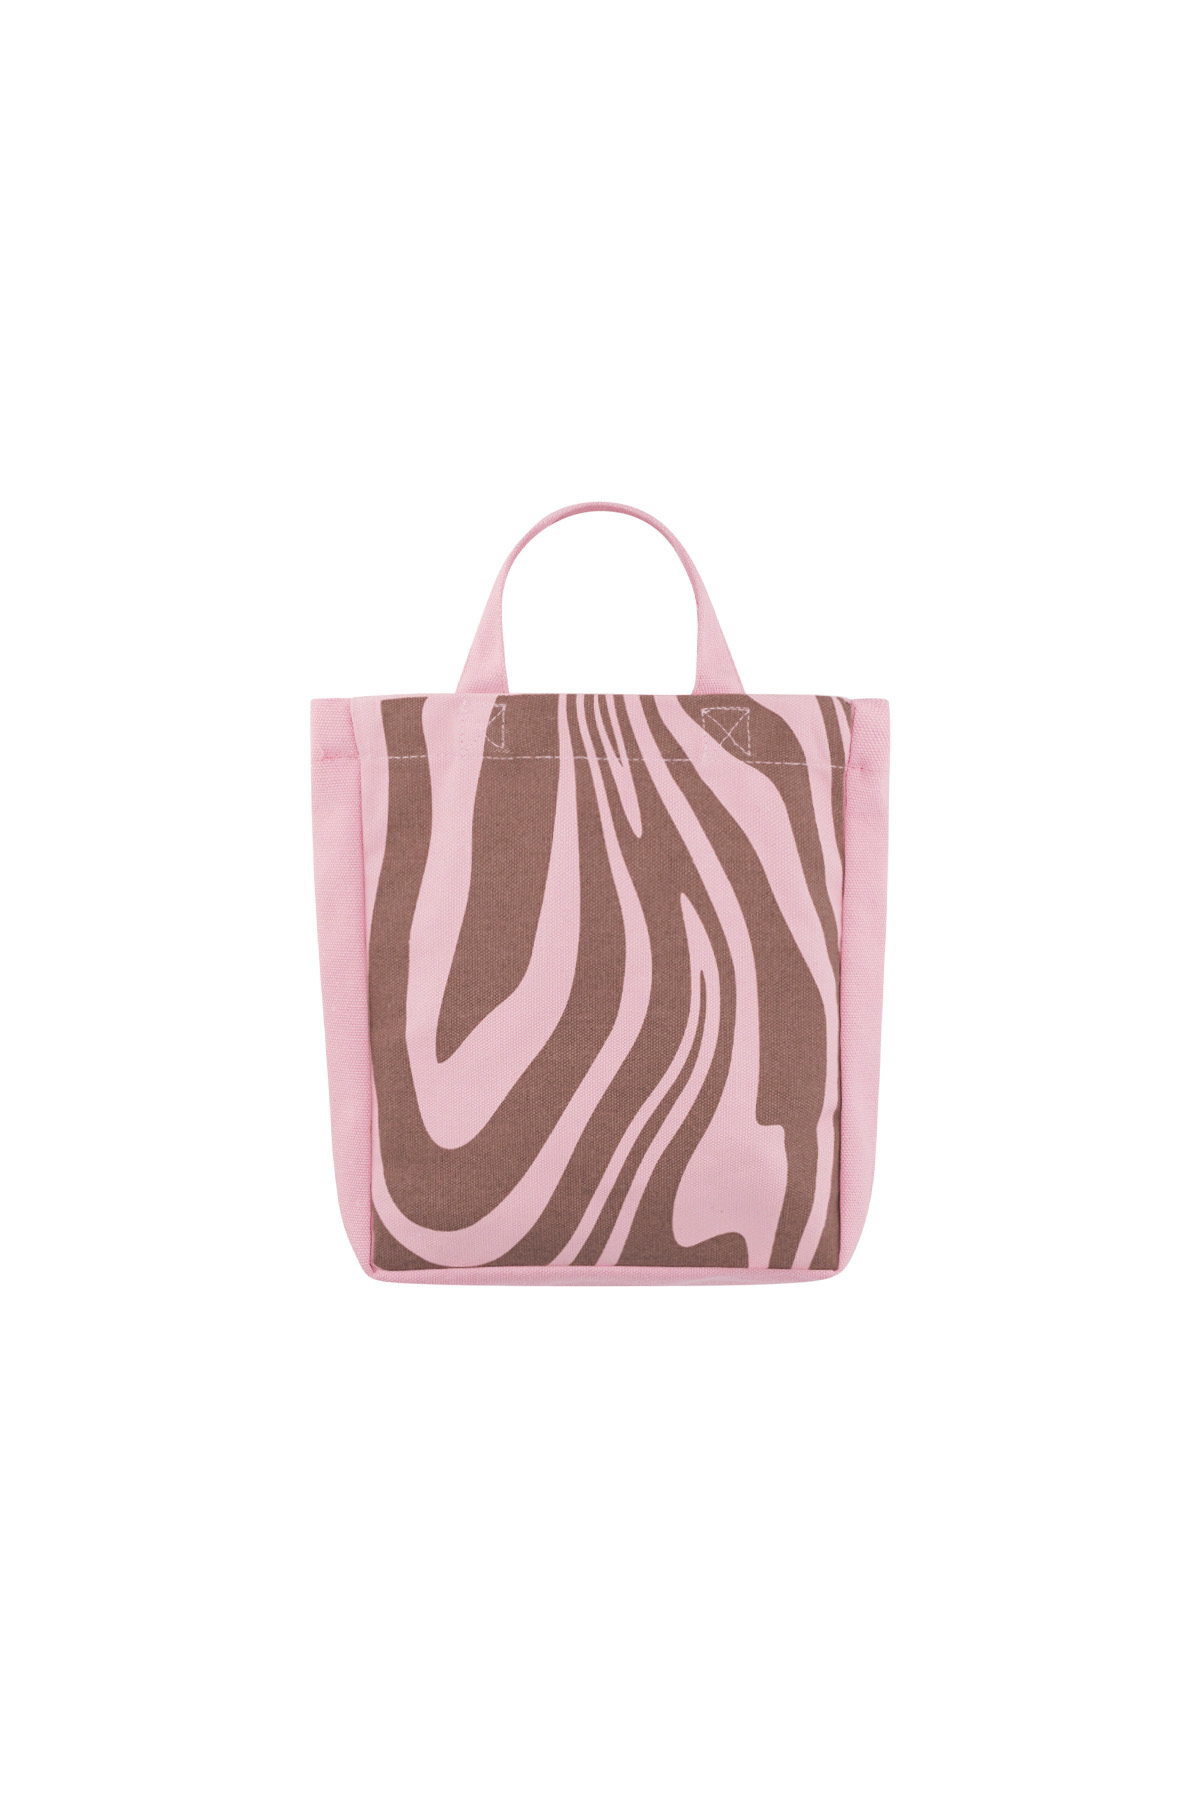 Kleine Canvastasche Zebra - rosa braun